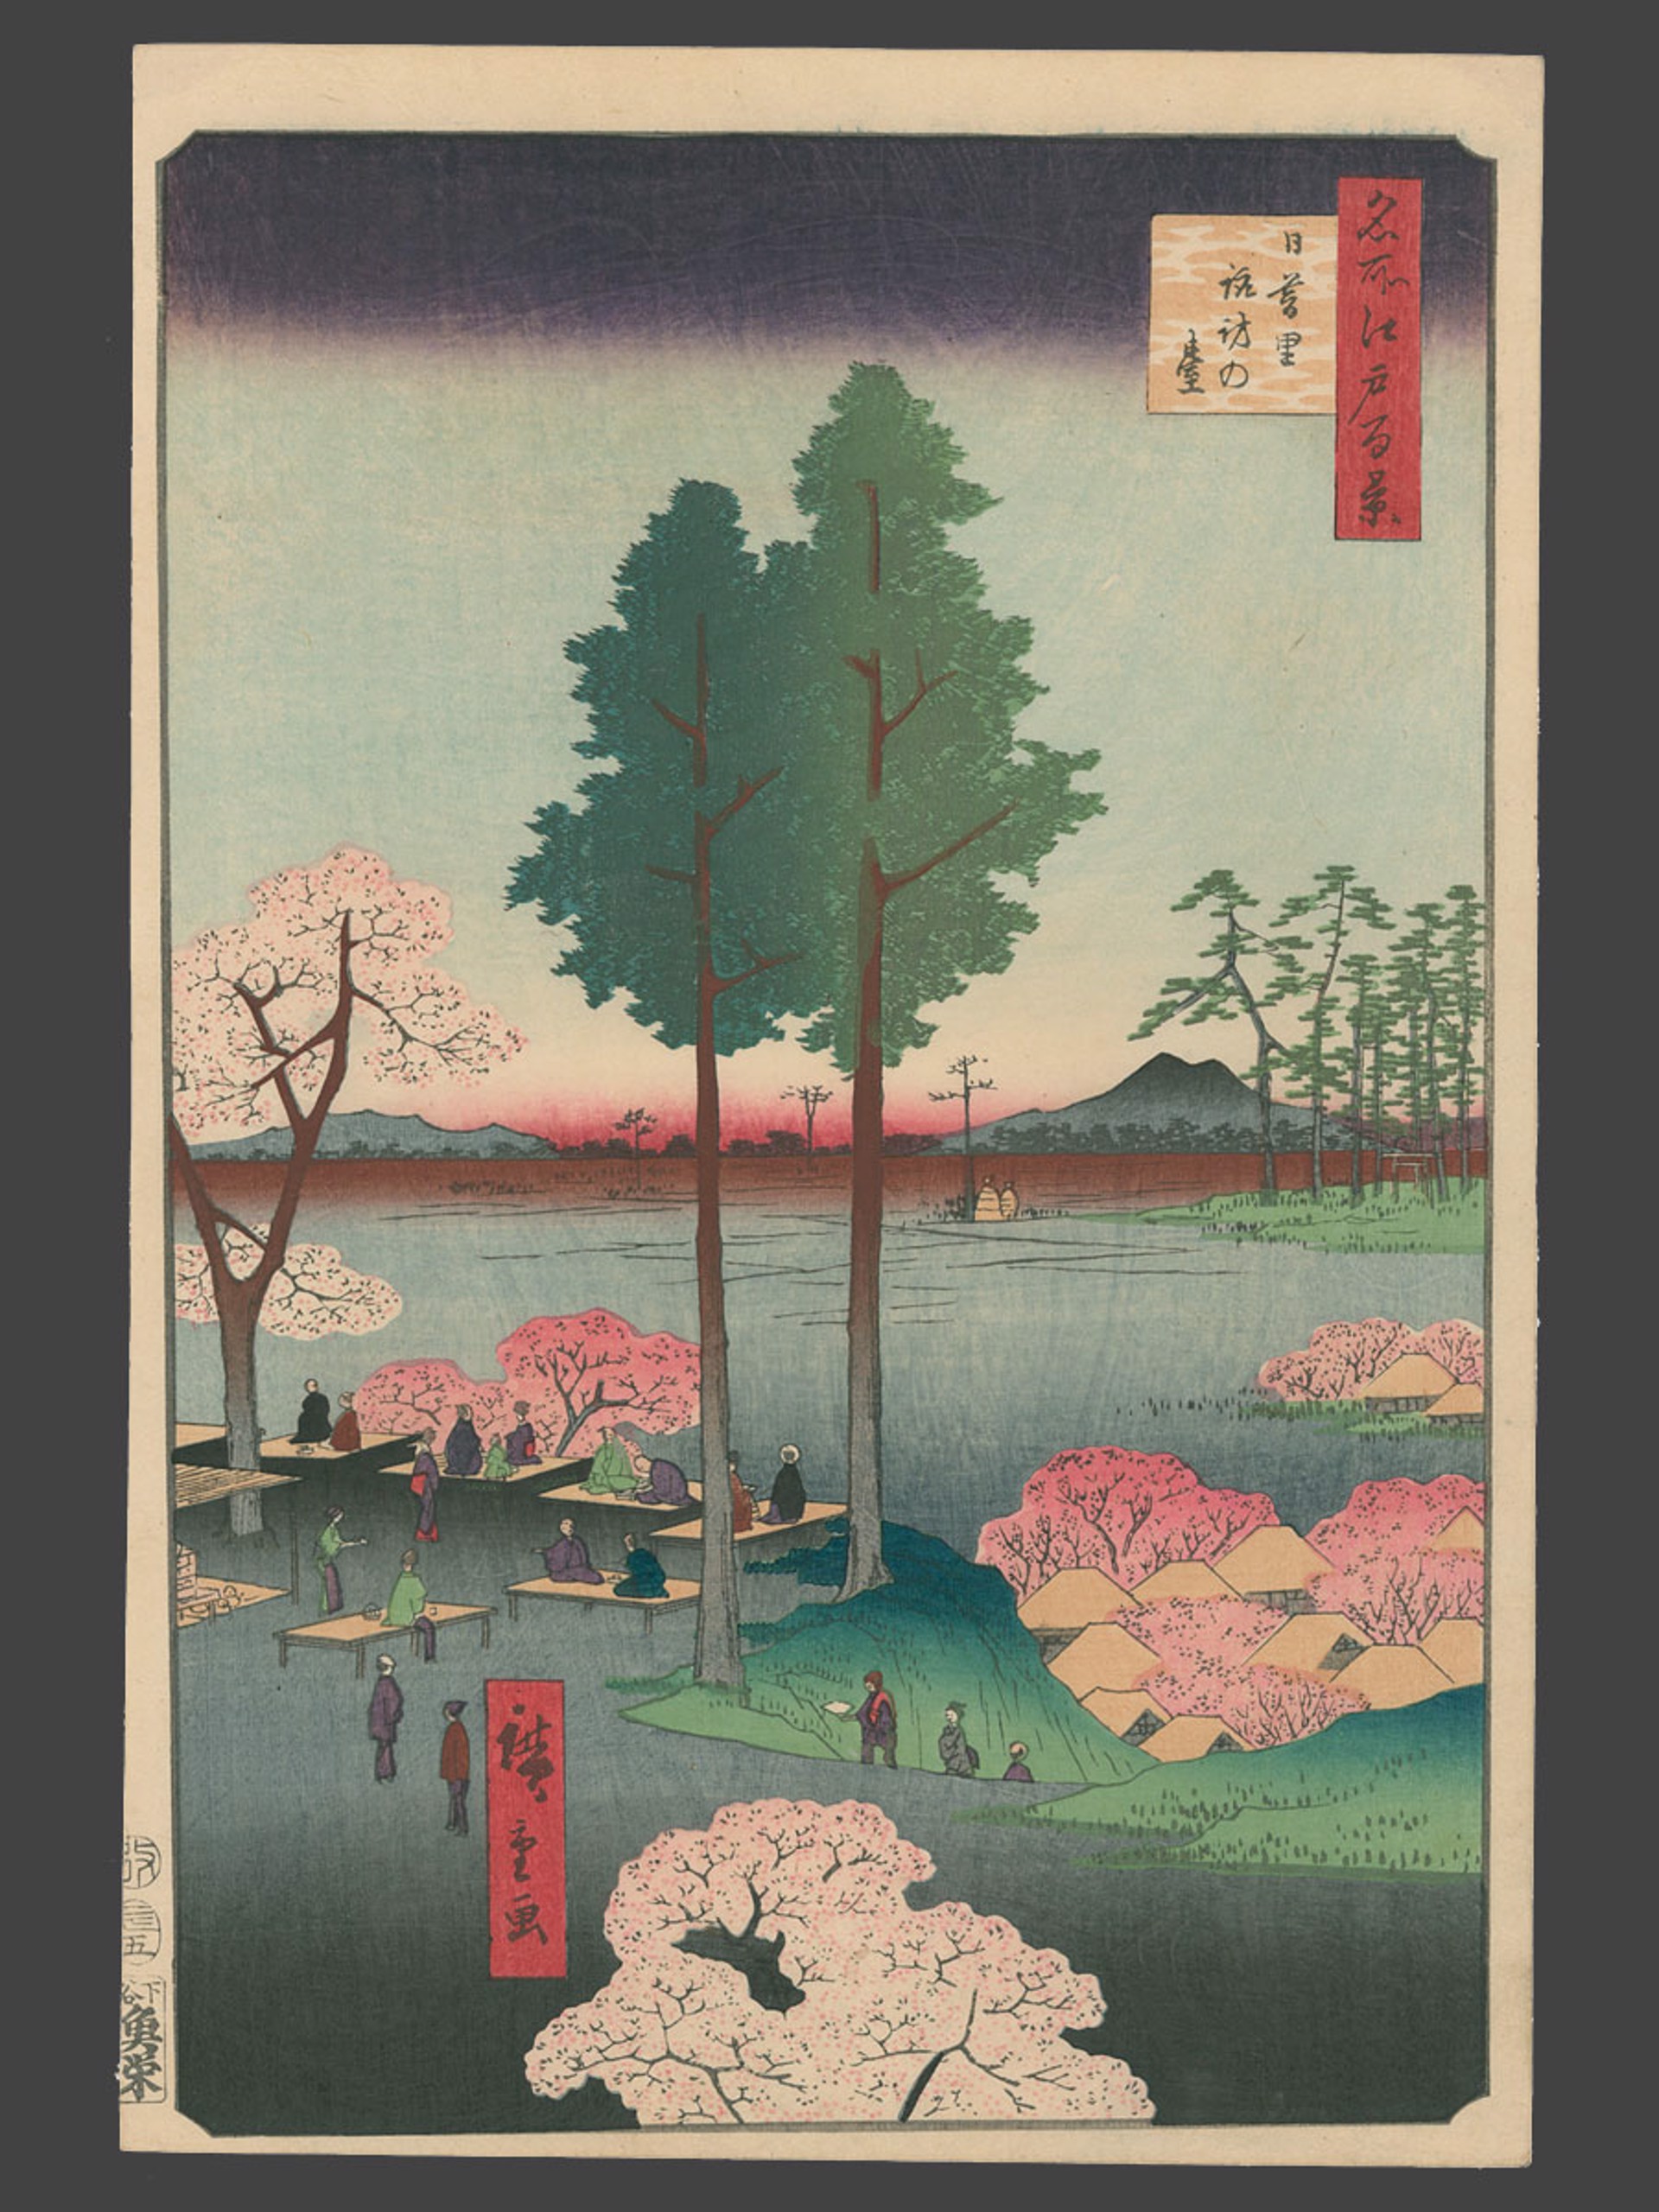 #15 Suwa Bluff, Nippori 100 Views of Edo by Hiroshige